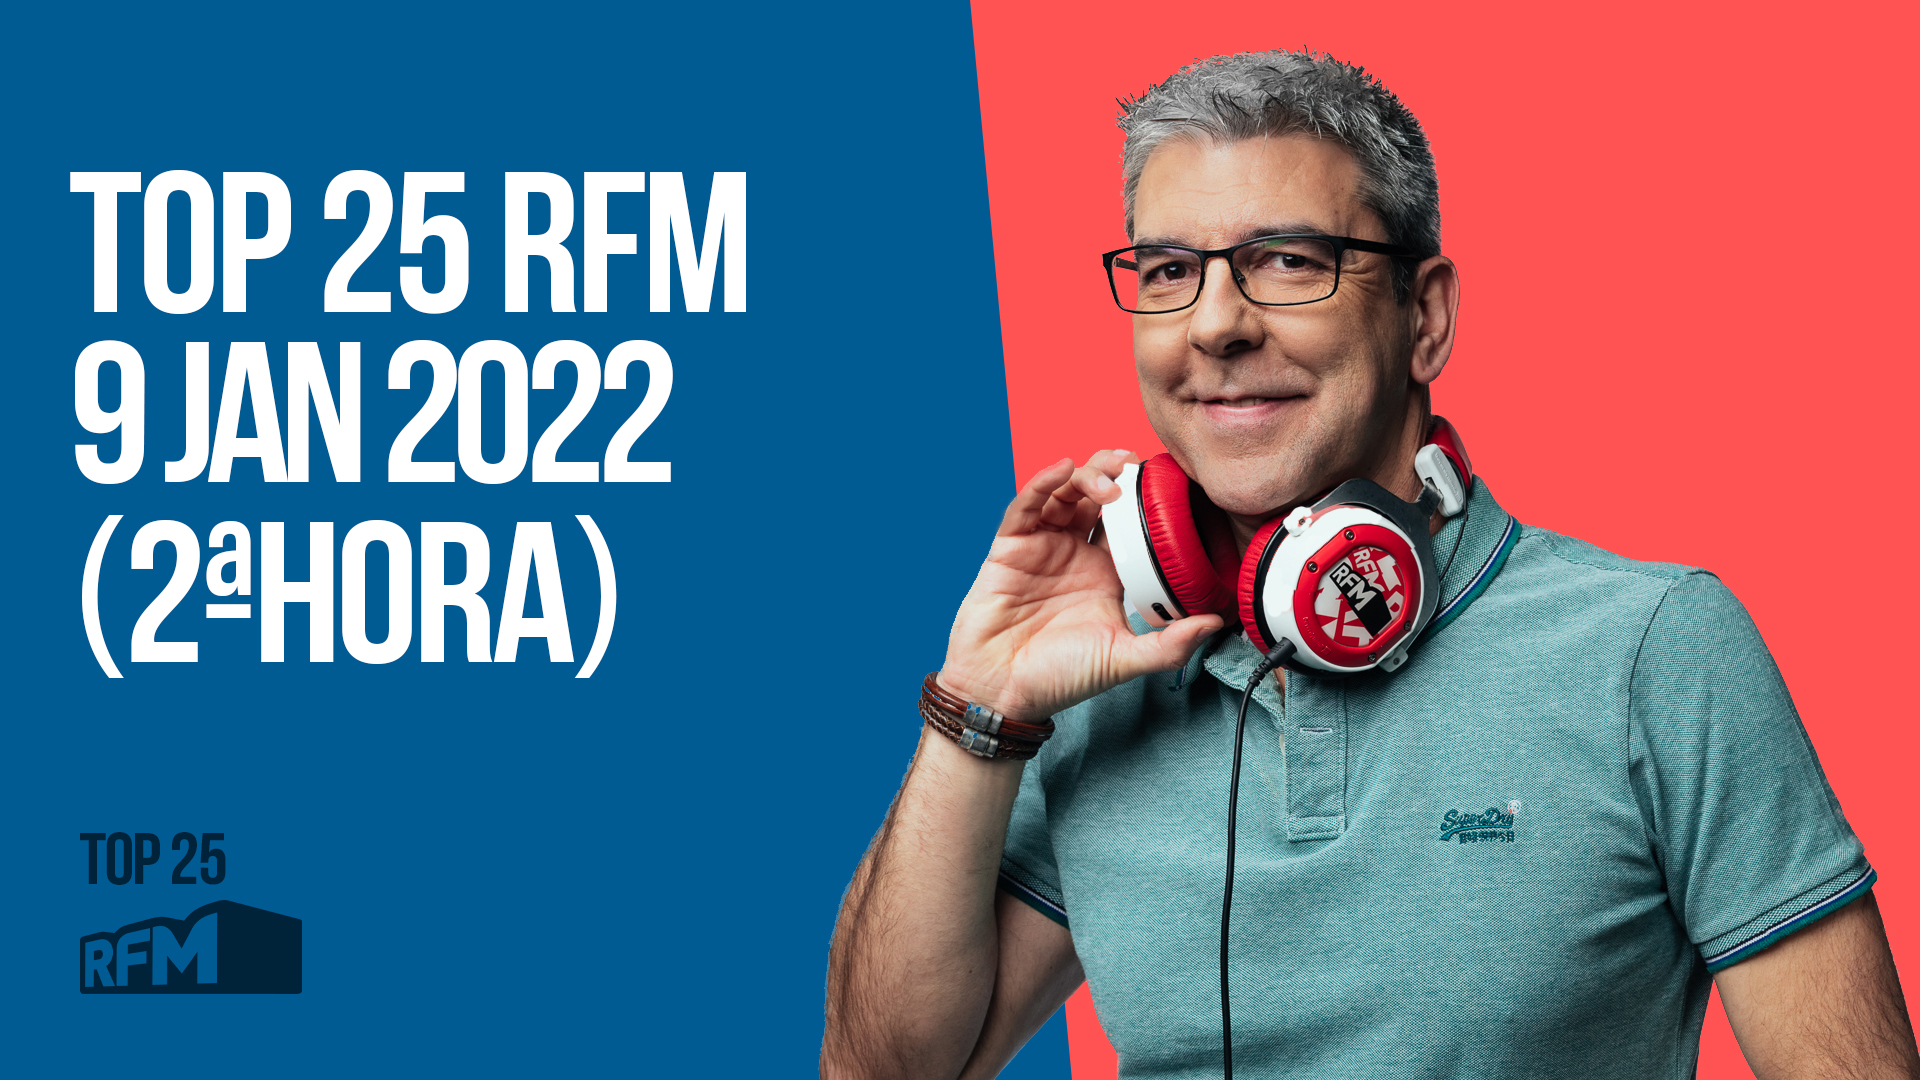 TOP 25 RFM 09 JANEIRO DE 2022 - 2ª HORA